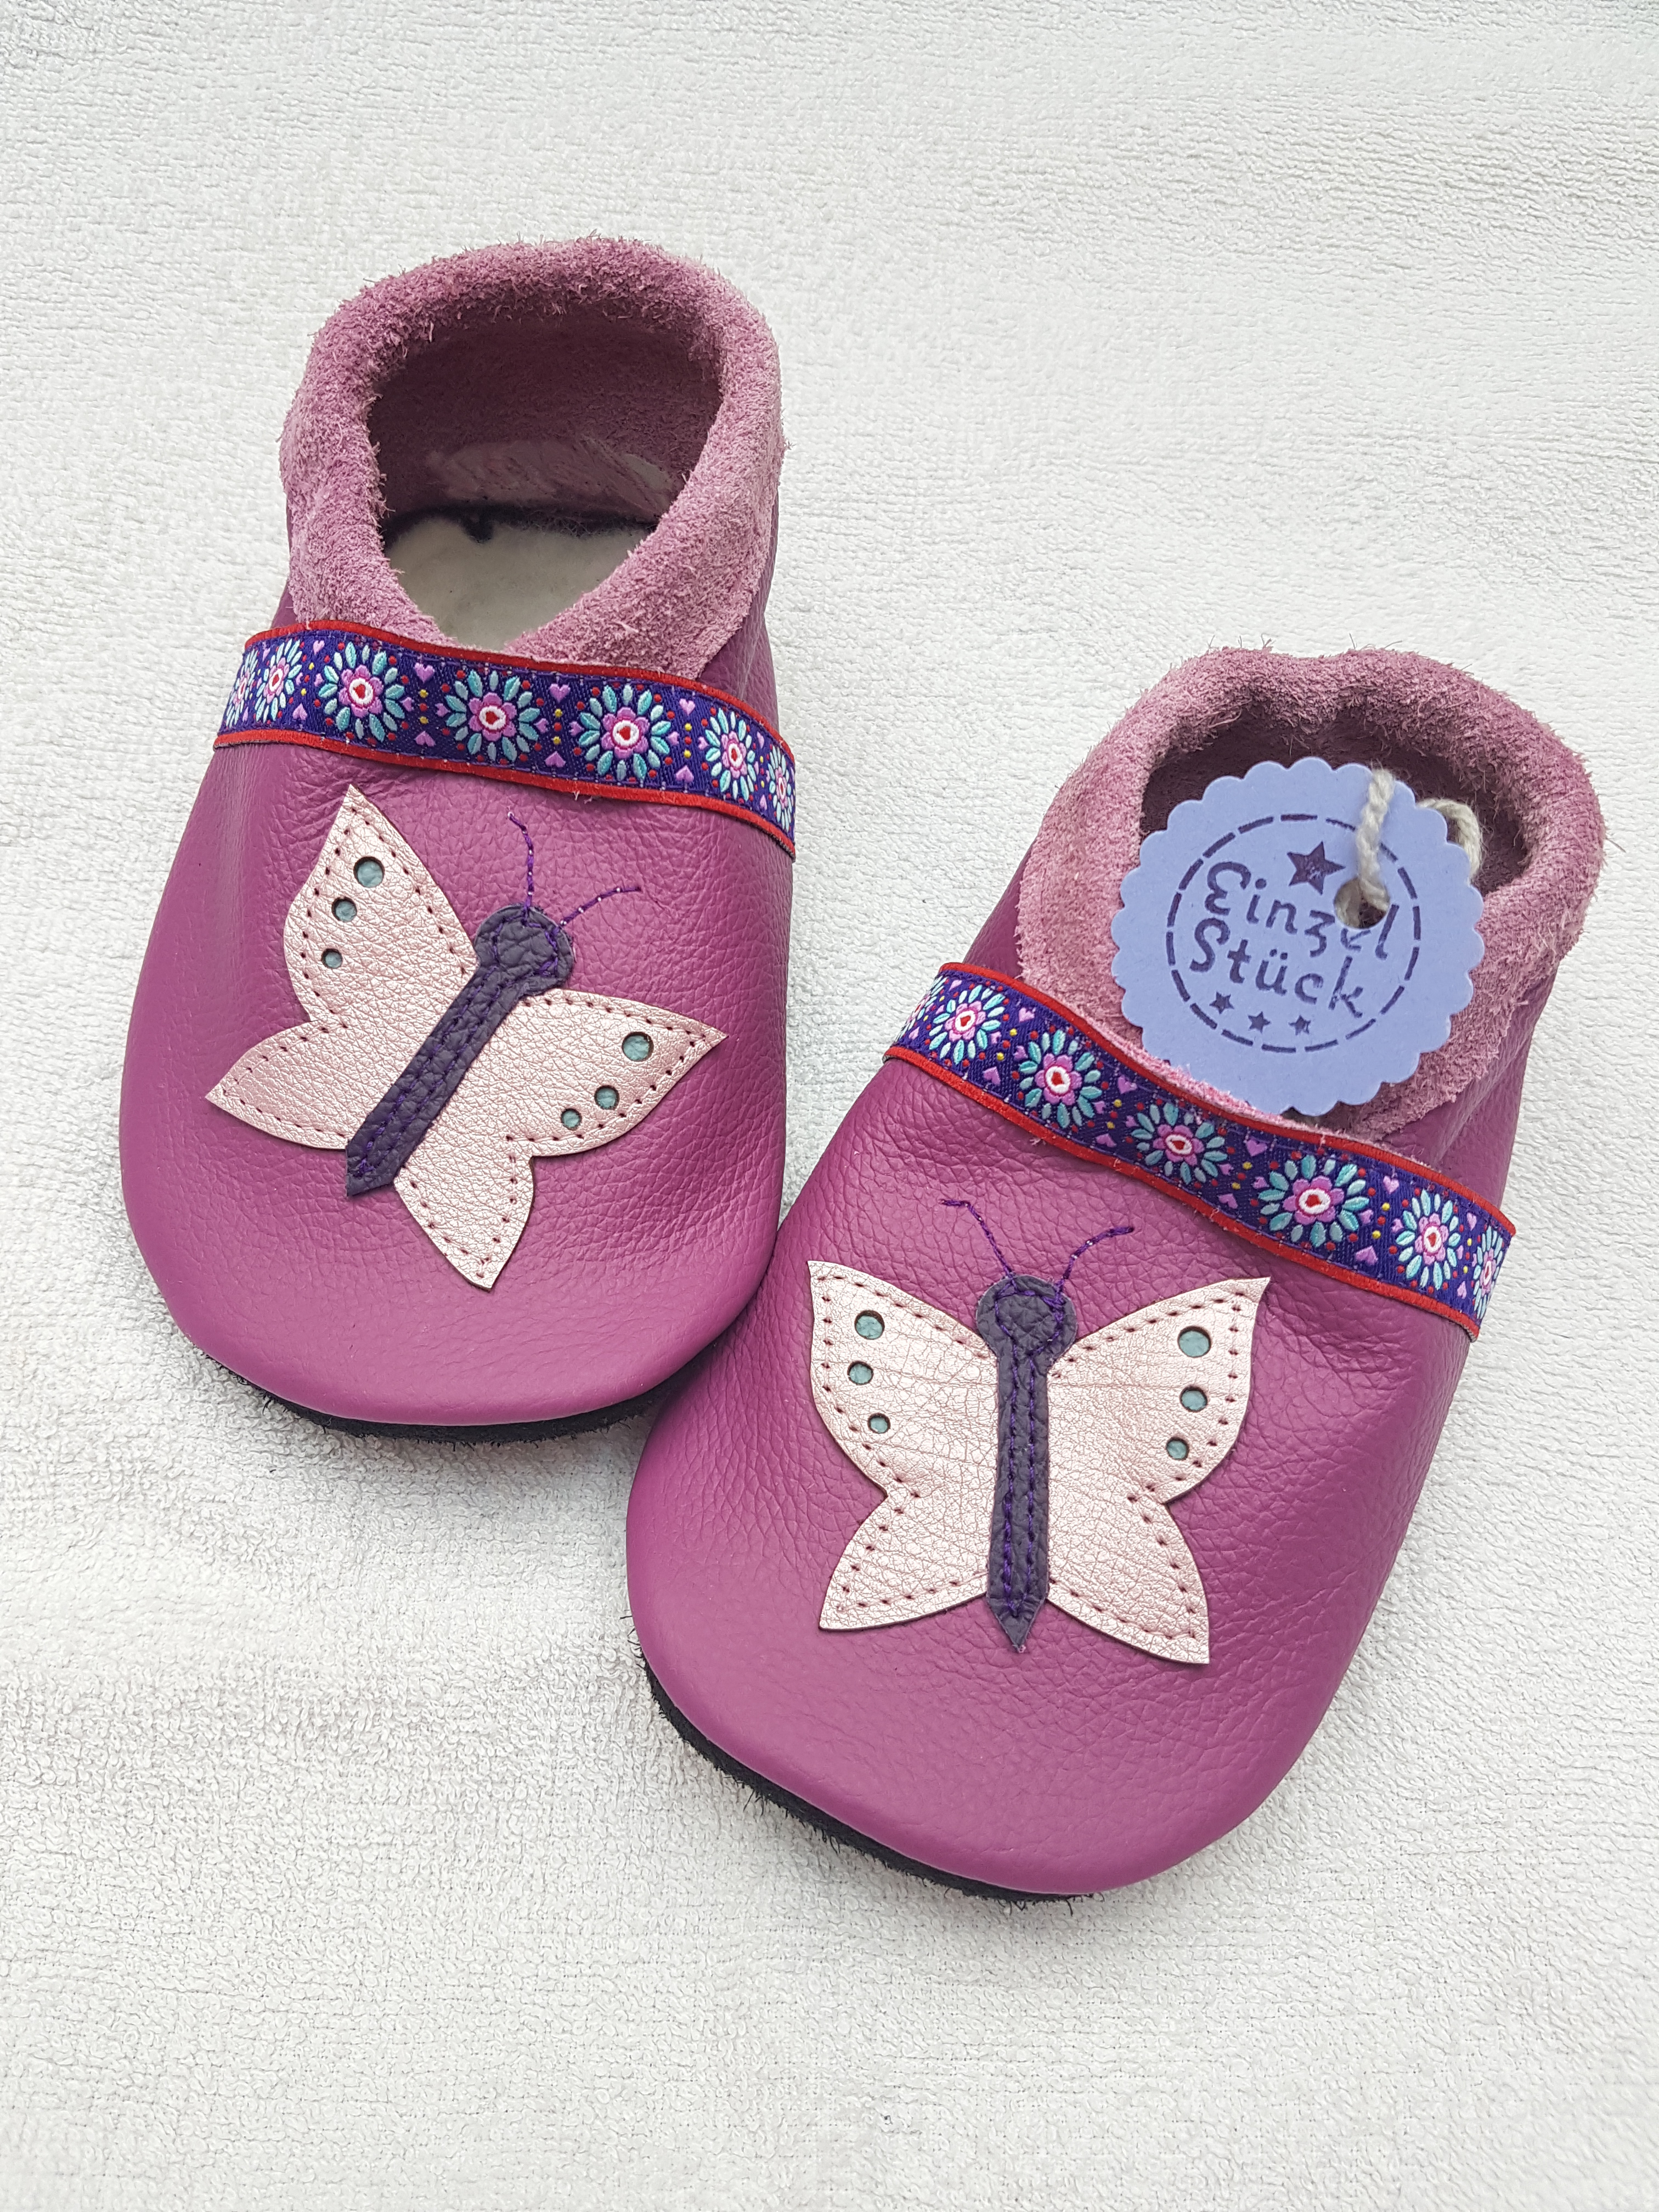 Schmetterlinge, Schuh Leder Baby, persönlich gestalteter Schuh